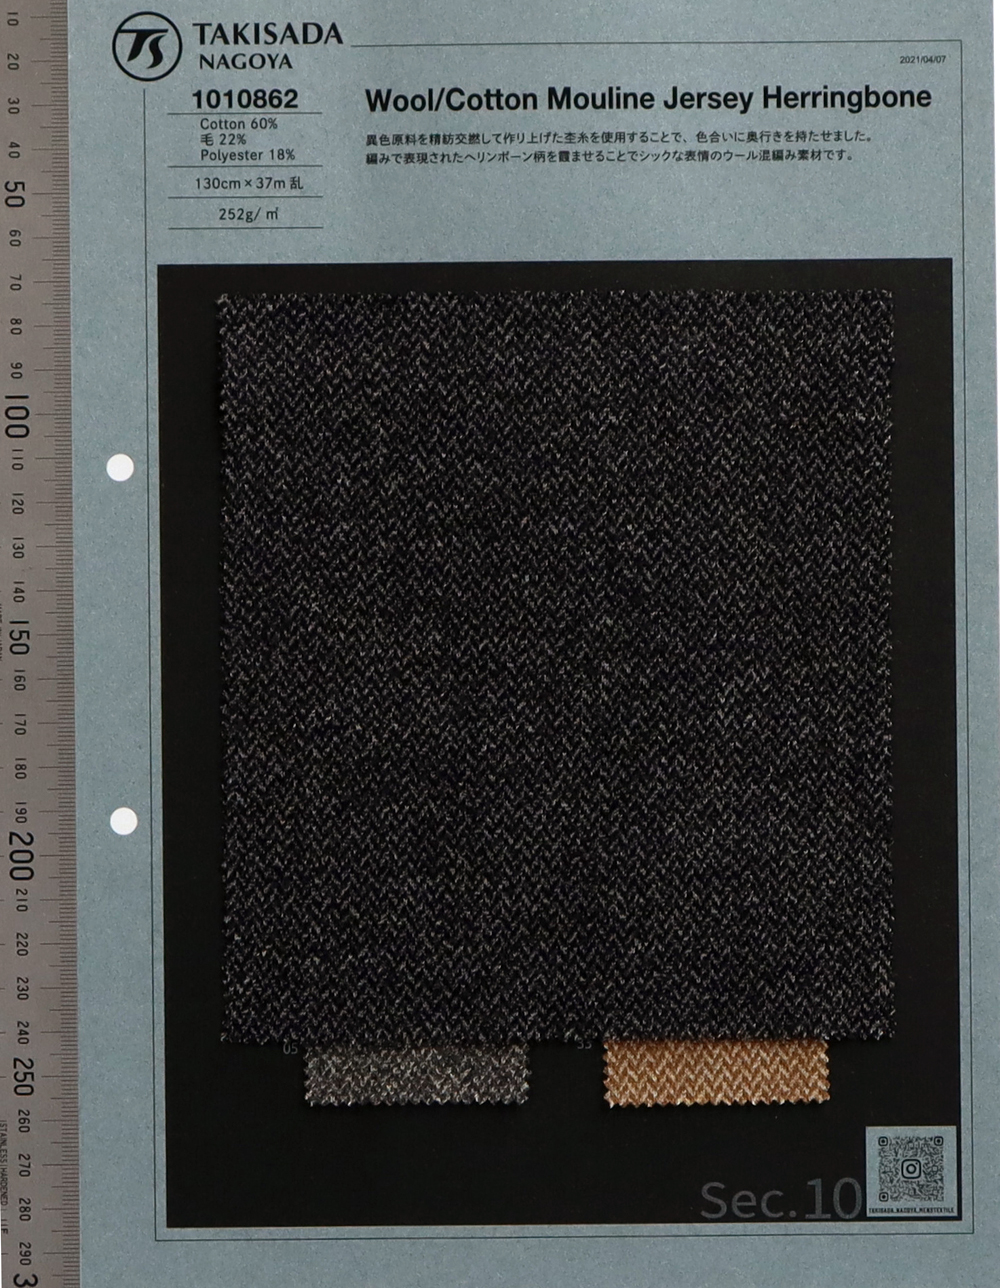 1010862 Murine-Jersey Aus Wolle/Baumwolle Mit Fischgrätenmuster[Textilgewebe] Takisada Nagoya